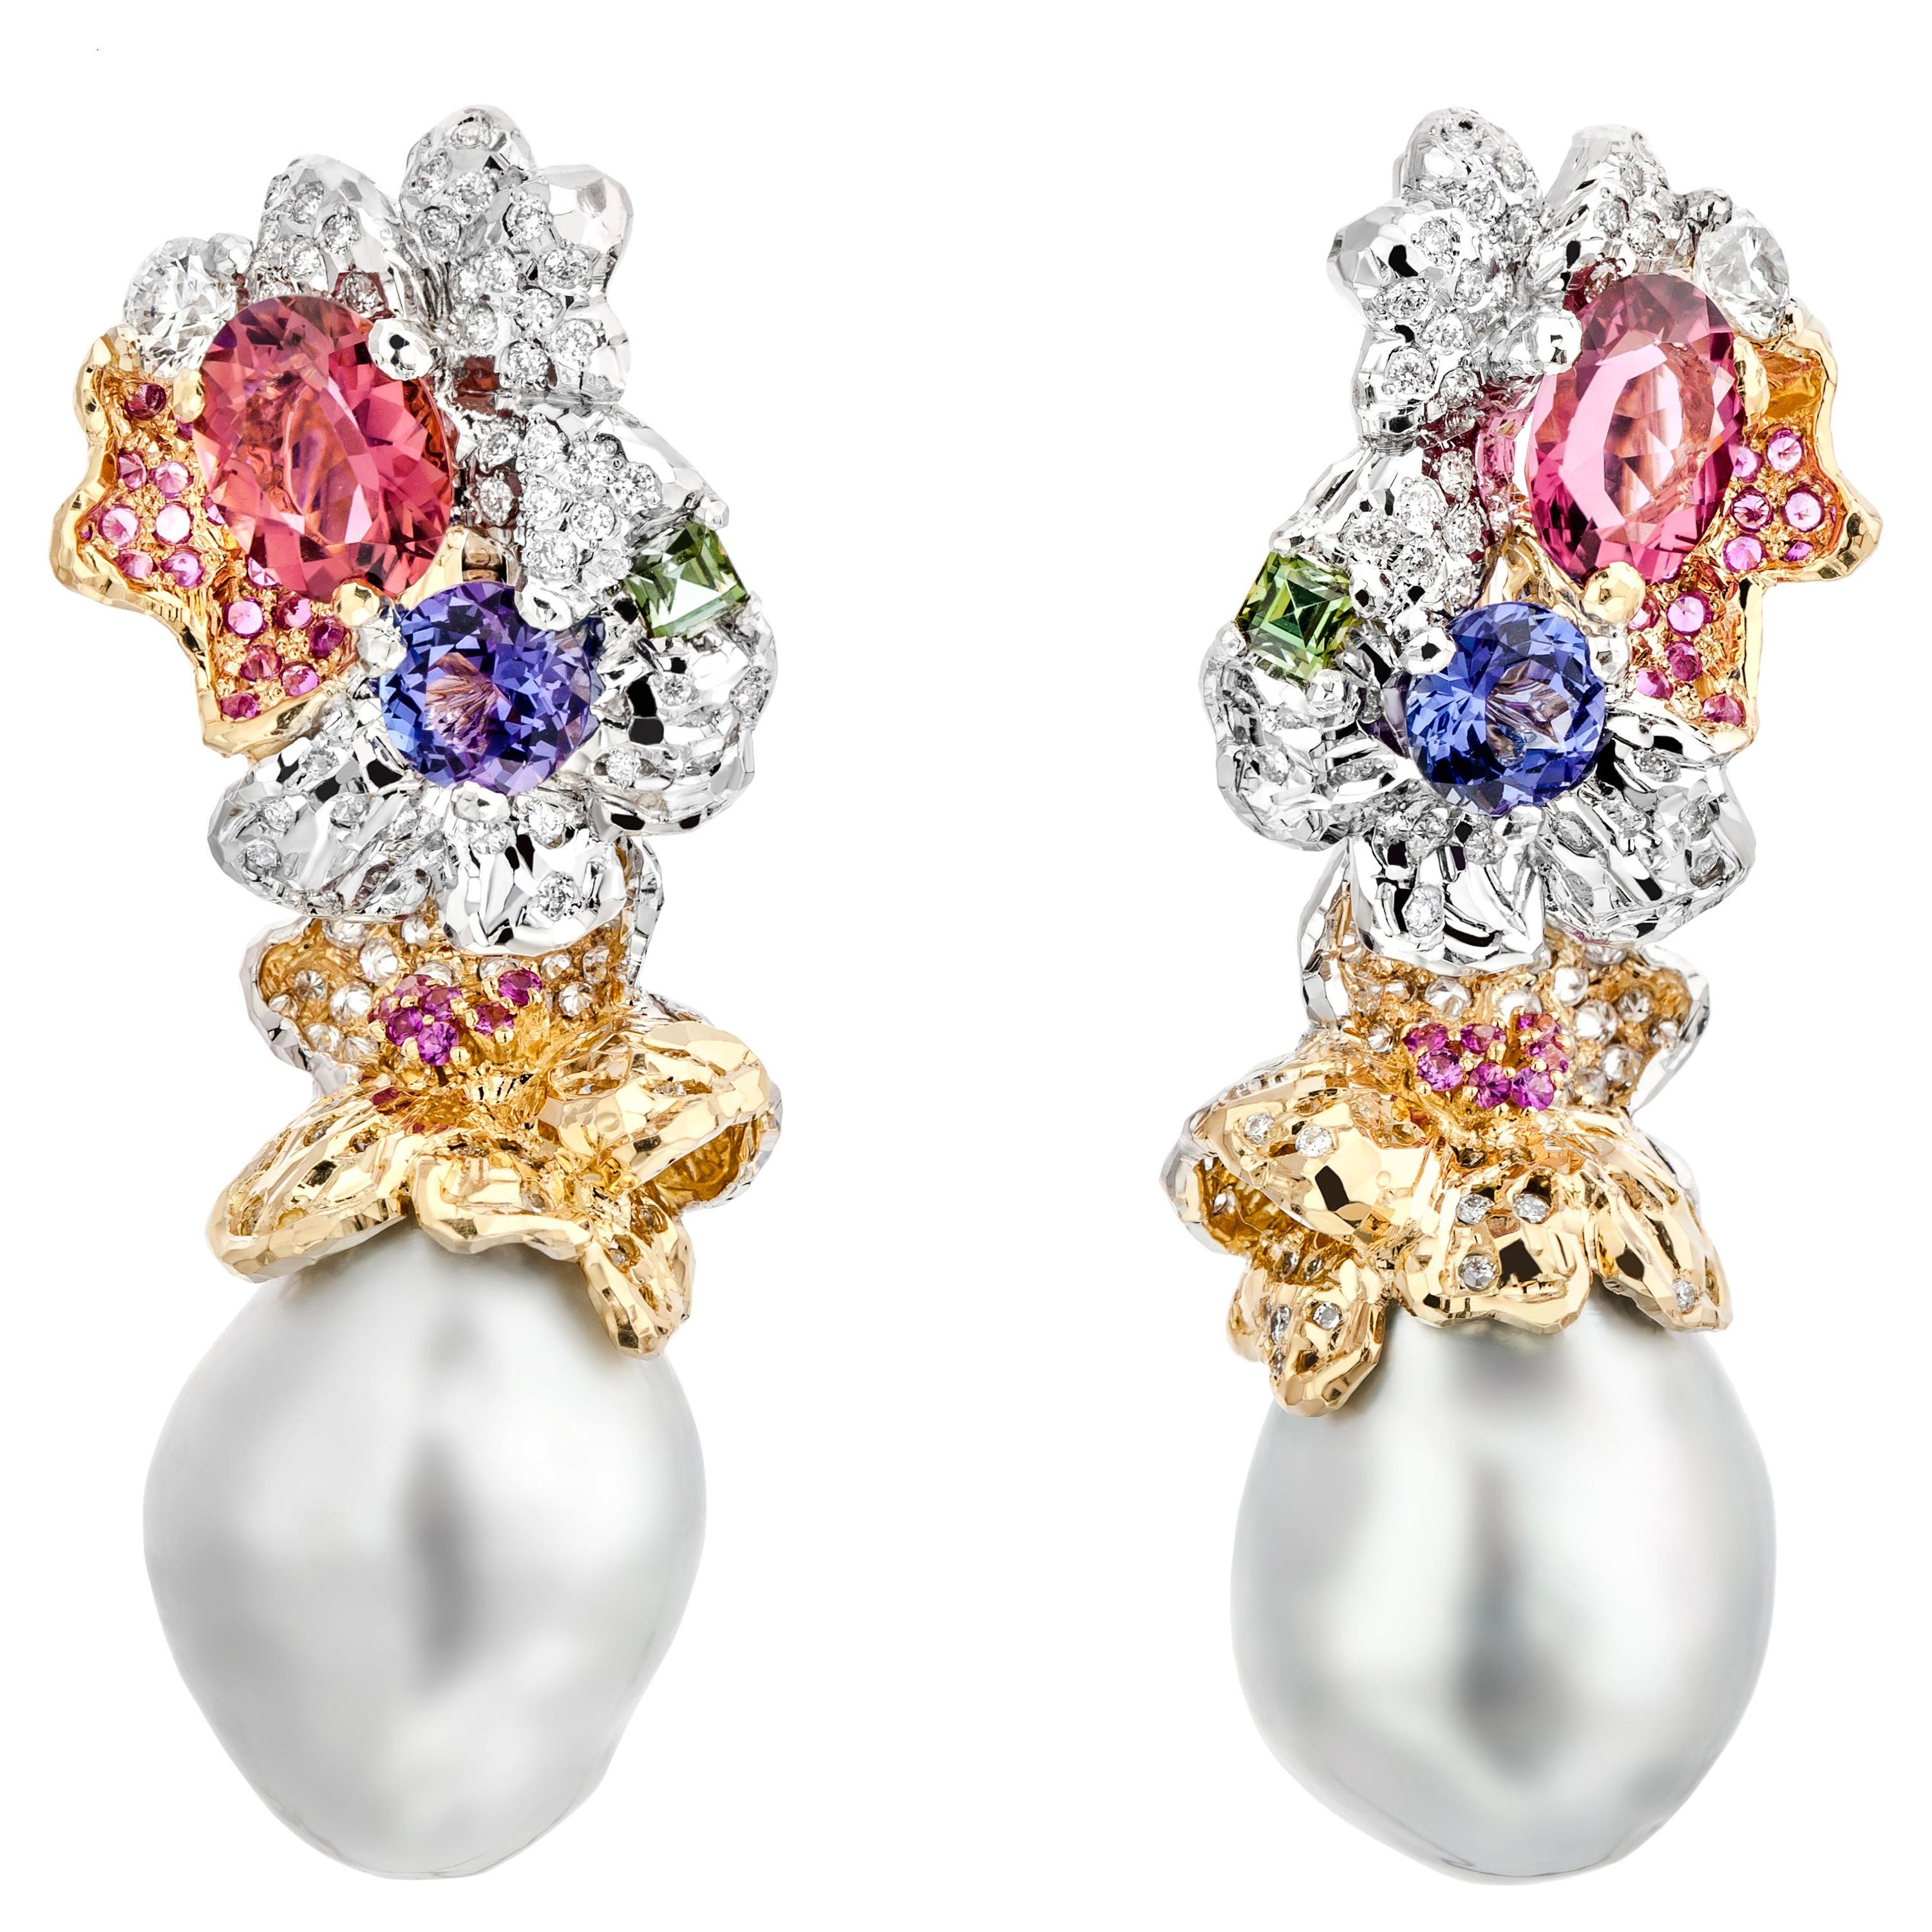 Boucles d'oreilles en forme de dôme en or 18 carats, diamants et perles, faites à la main